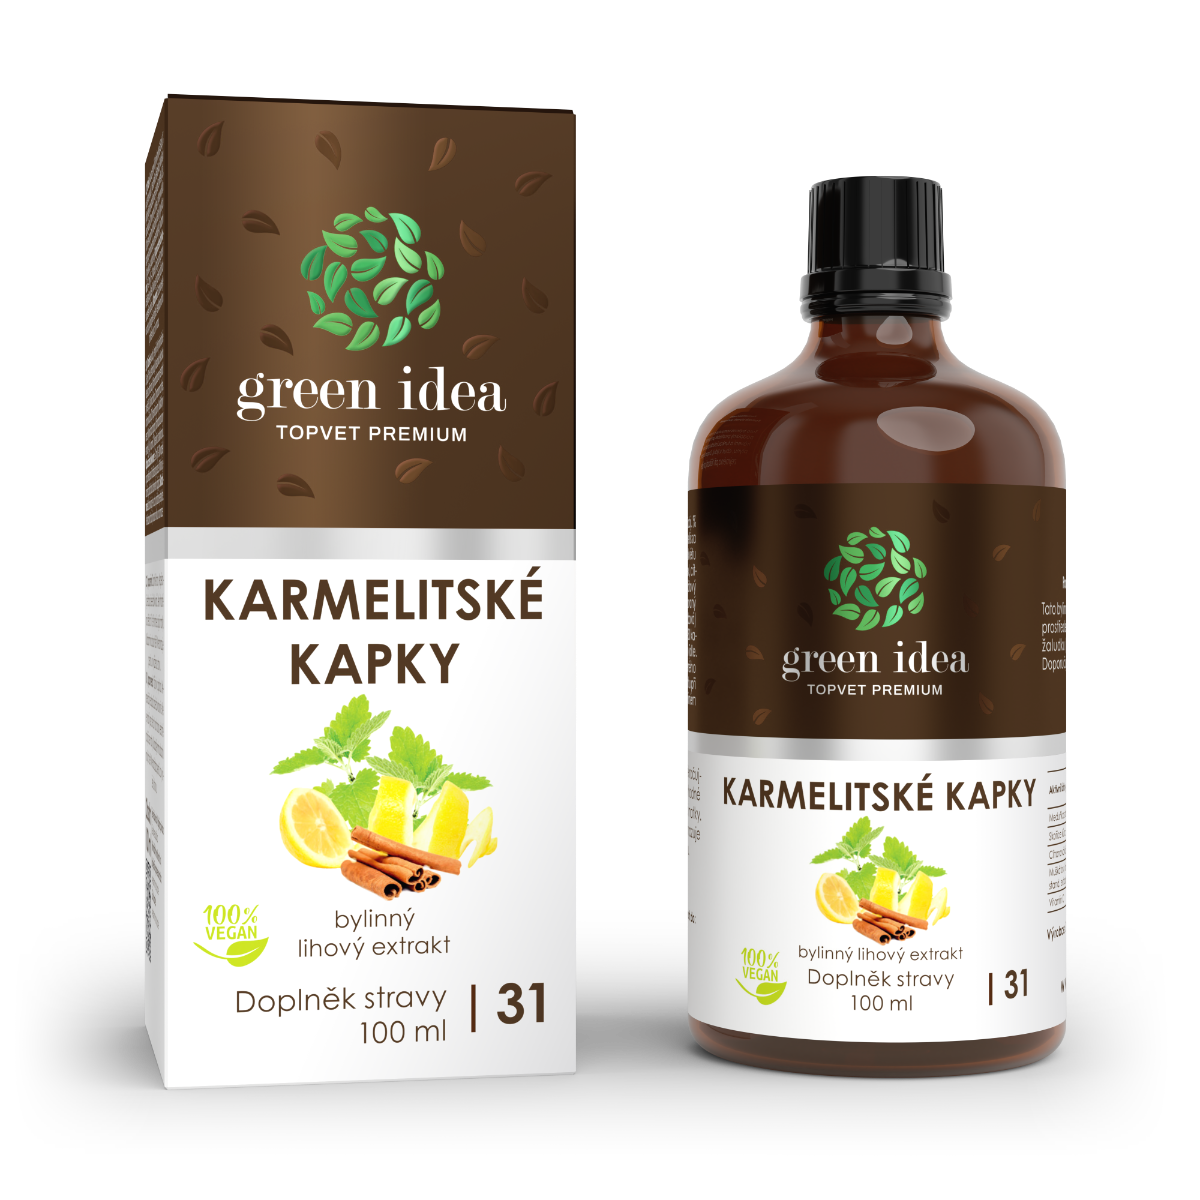 Green idea Karmelitské kapky 100 ml Green idea